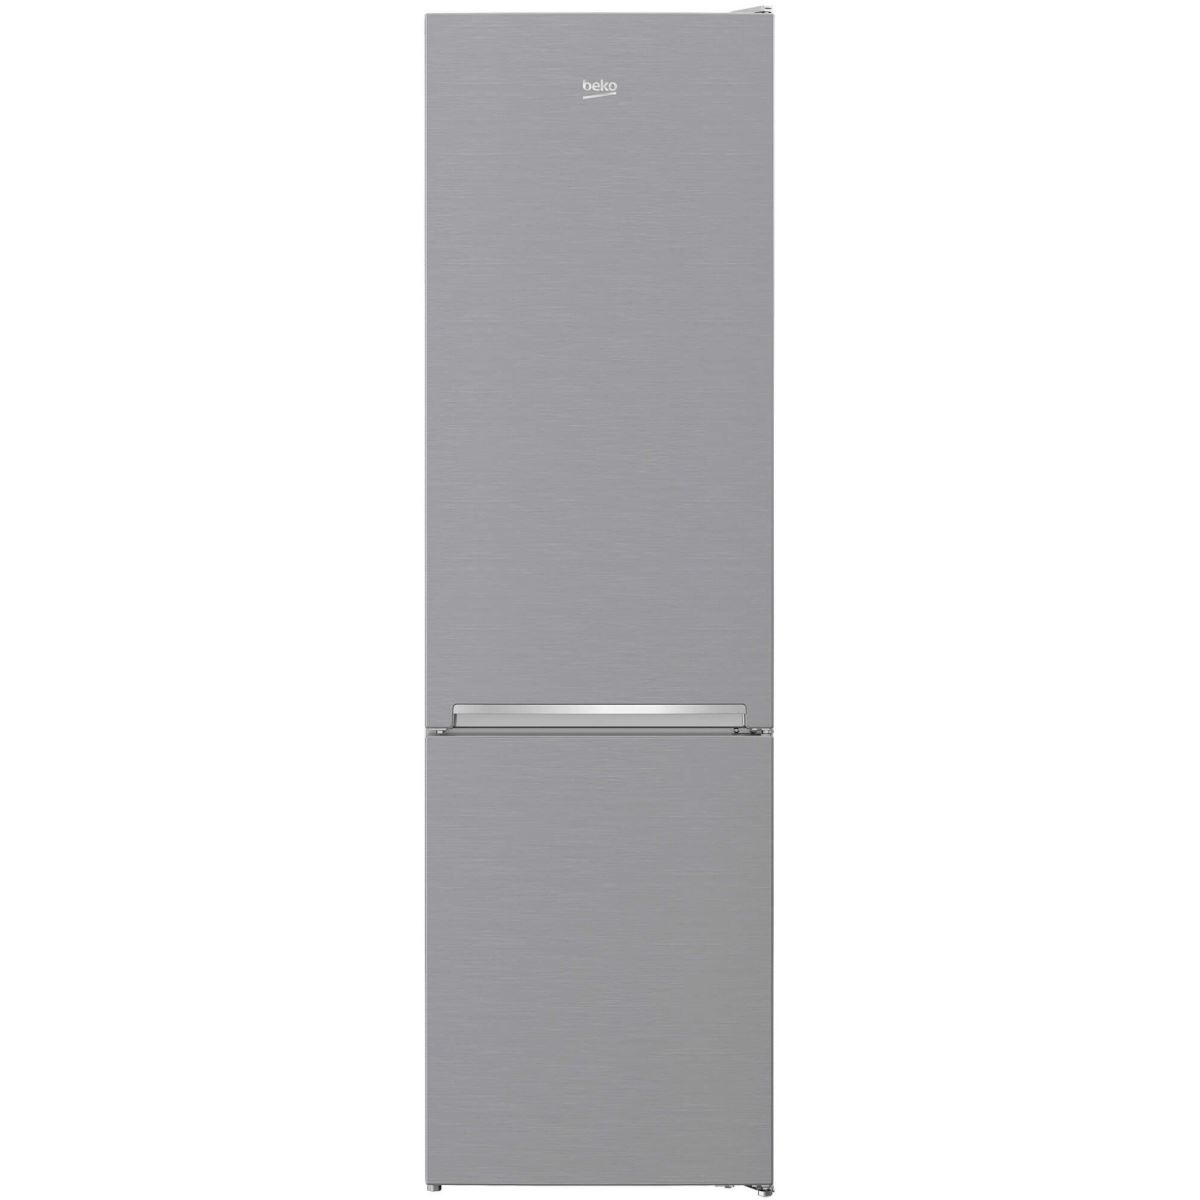 Combina frigorifica Beko RCNA406I30XB, 362 L, No Frost, Compartiment 0°C, 203.1 cm, Argintiu